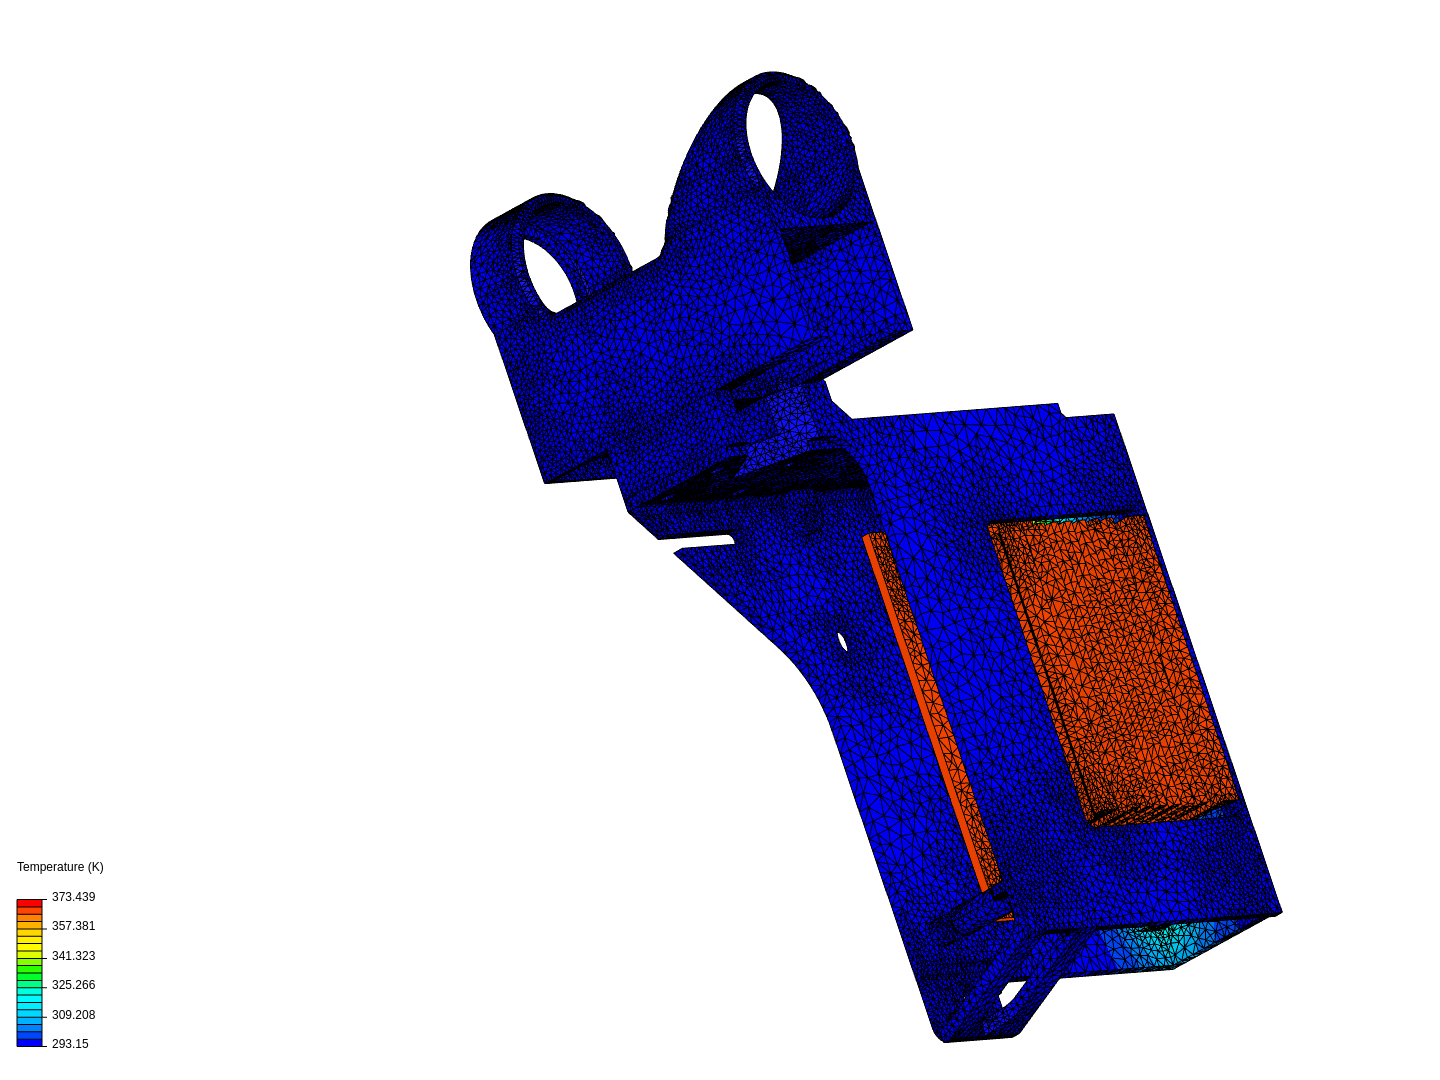 Jetson Nano Case thermal analysis image